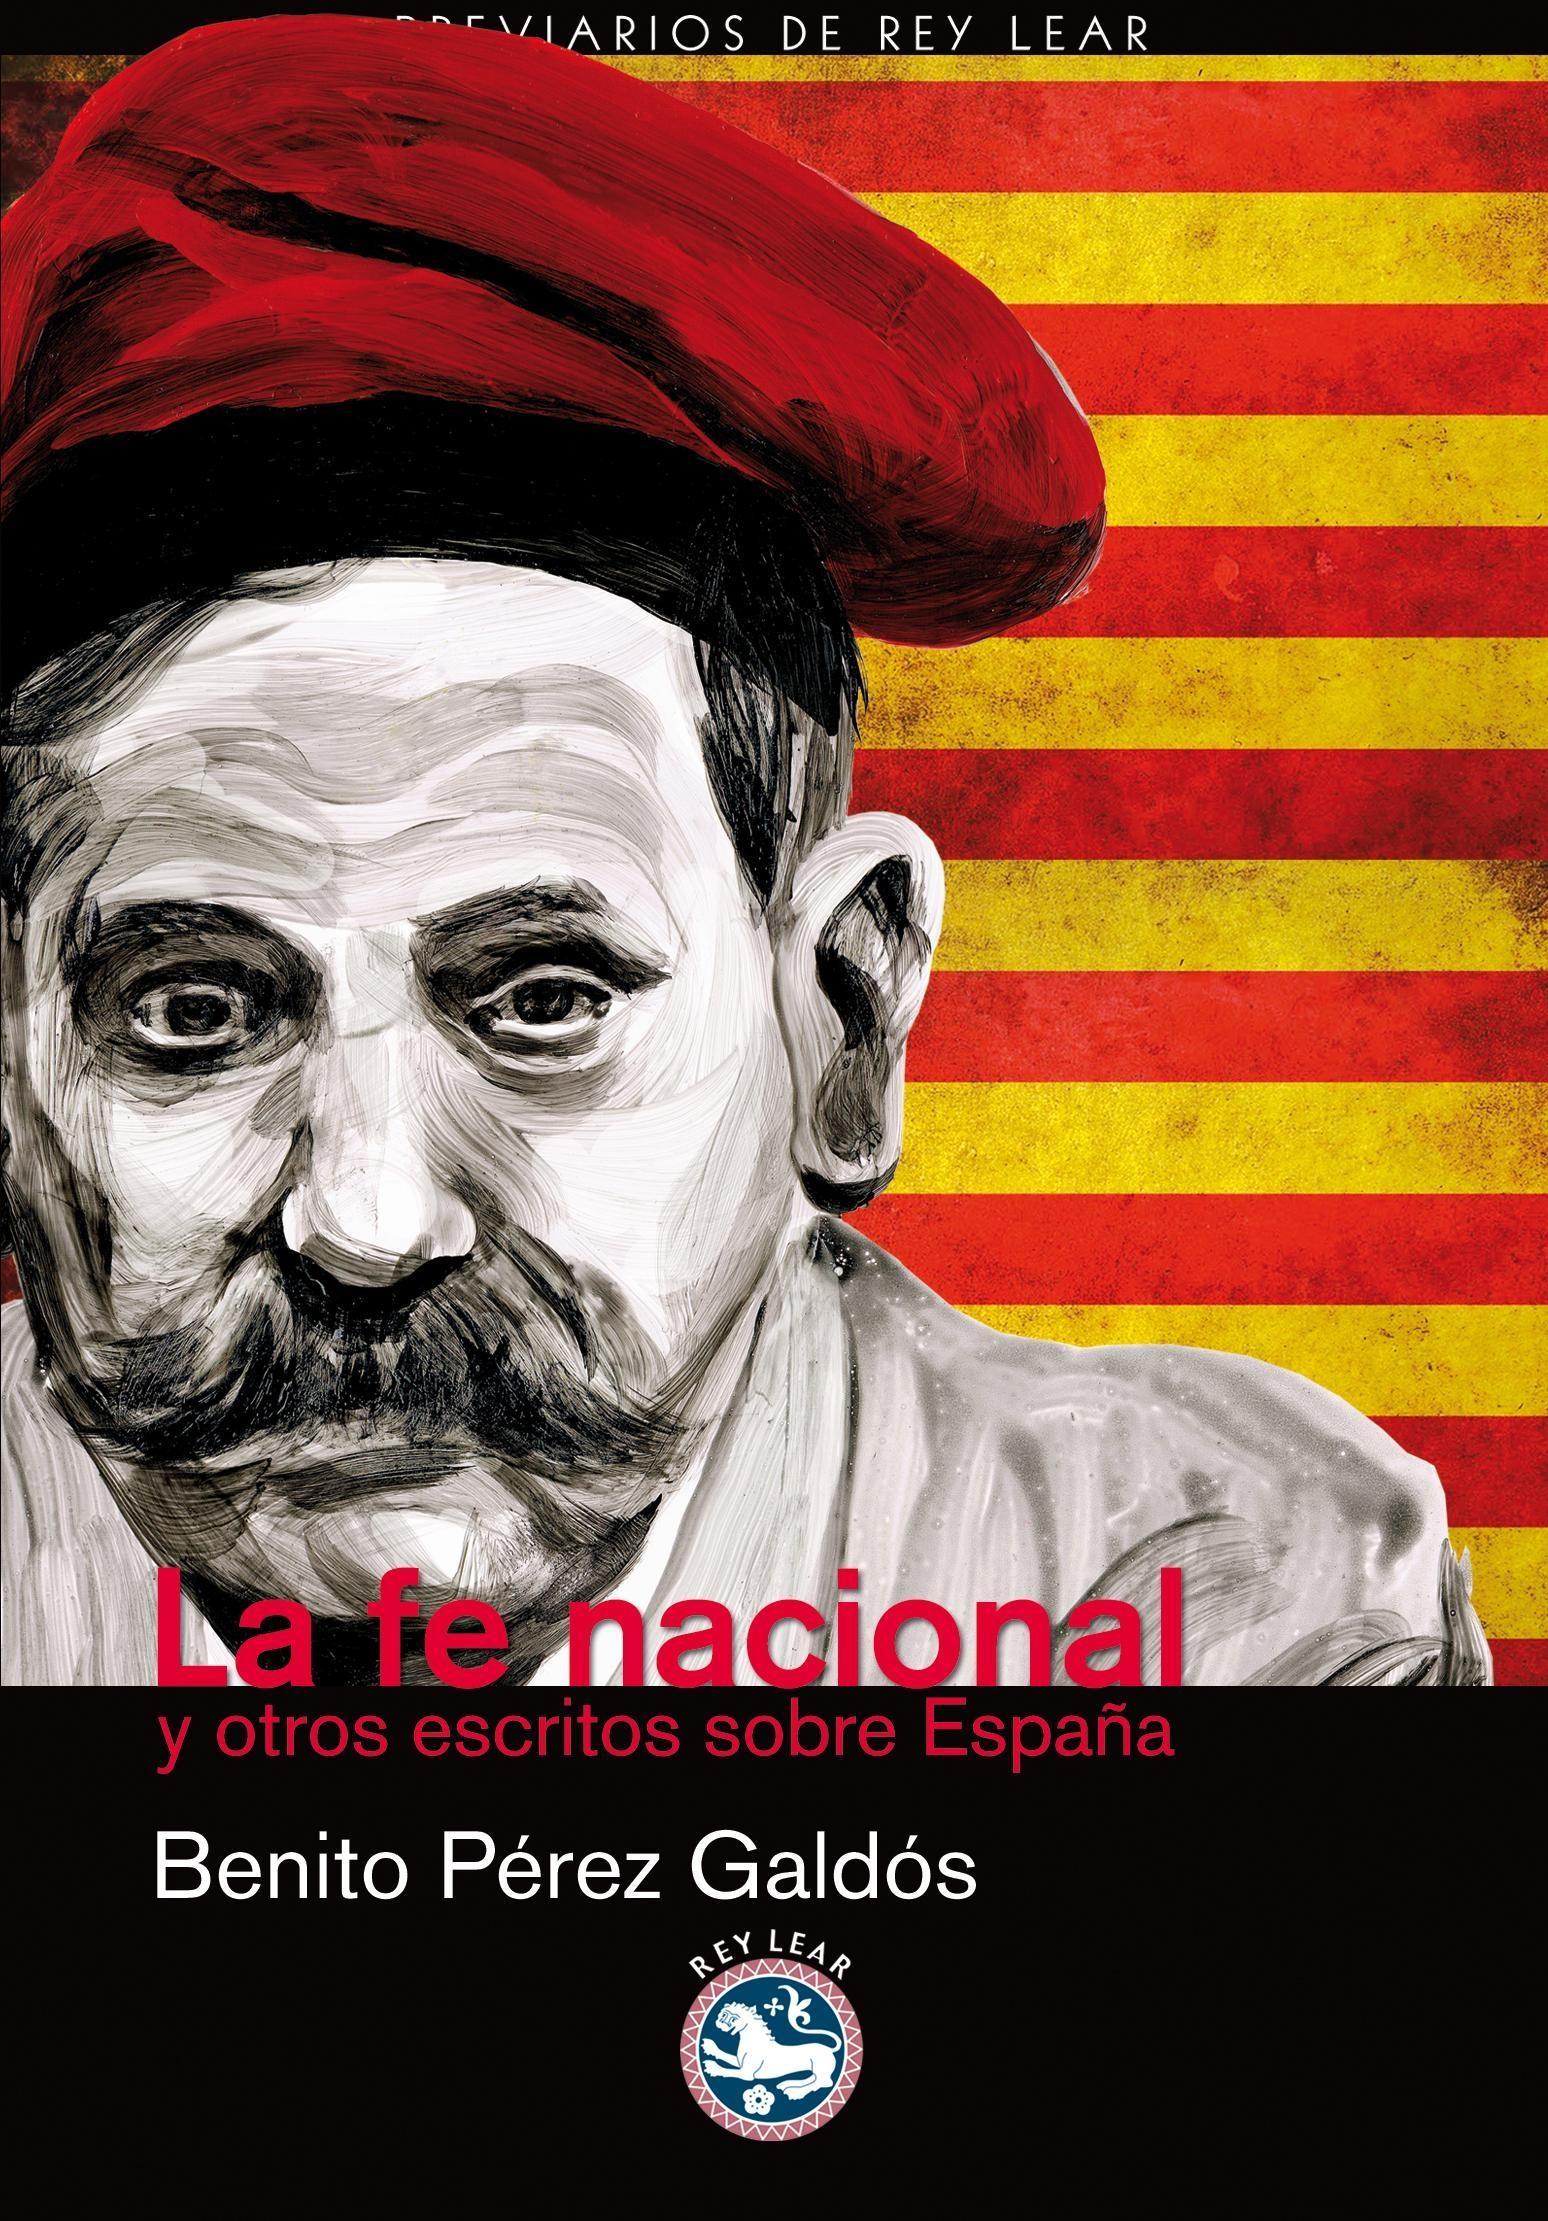 La fe nacional y otros escritos sobre España